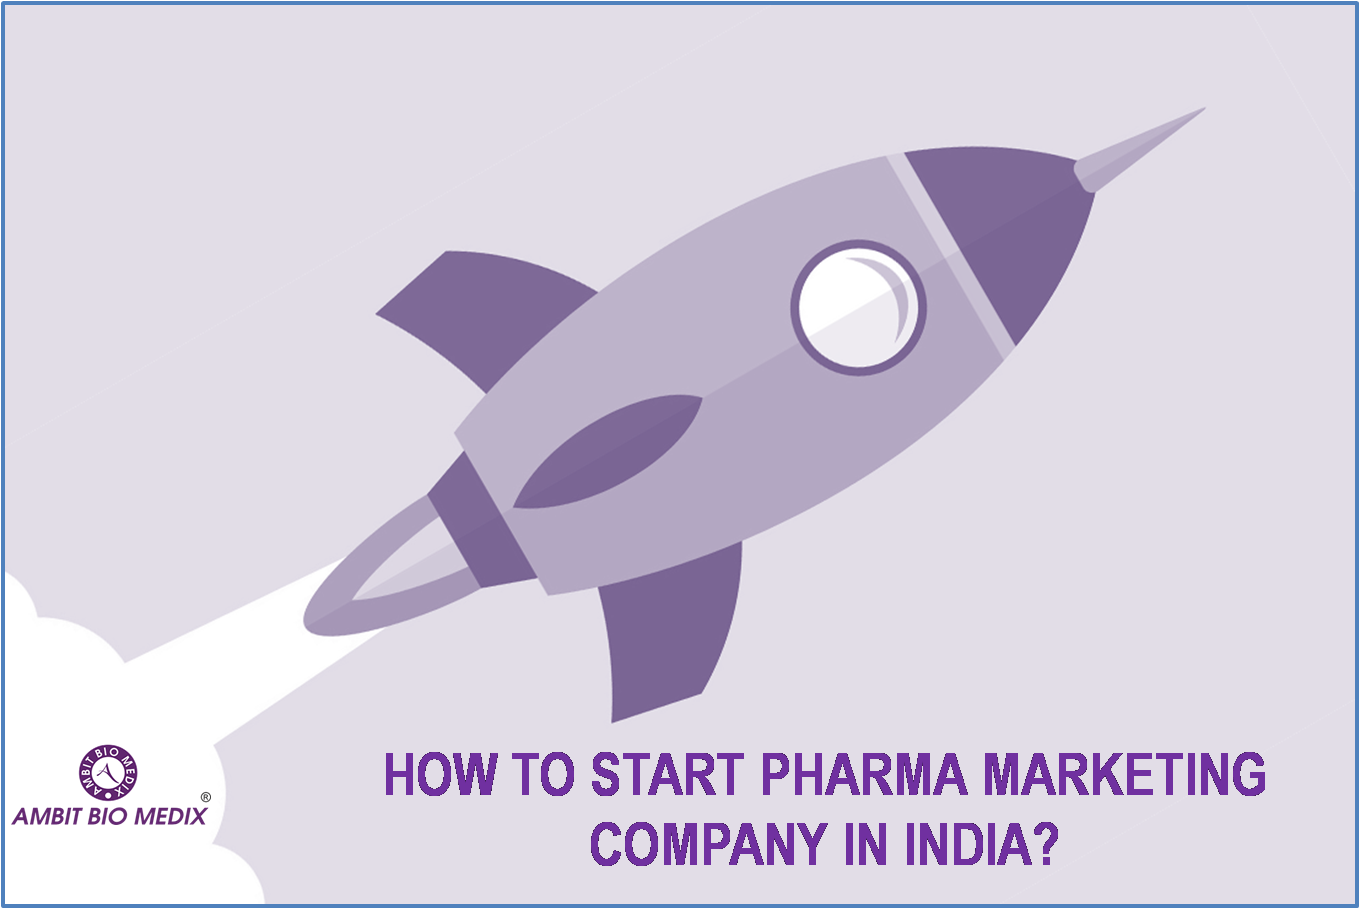 START PHARMA MARKETING COMPANY IN INDIA